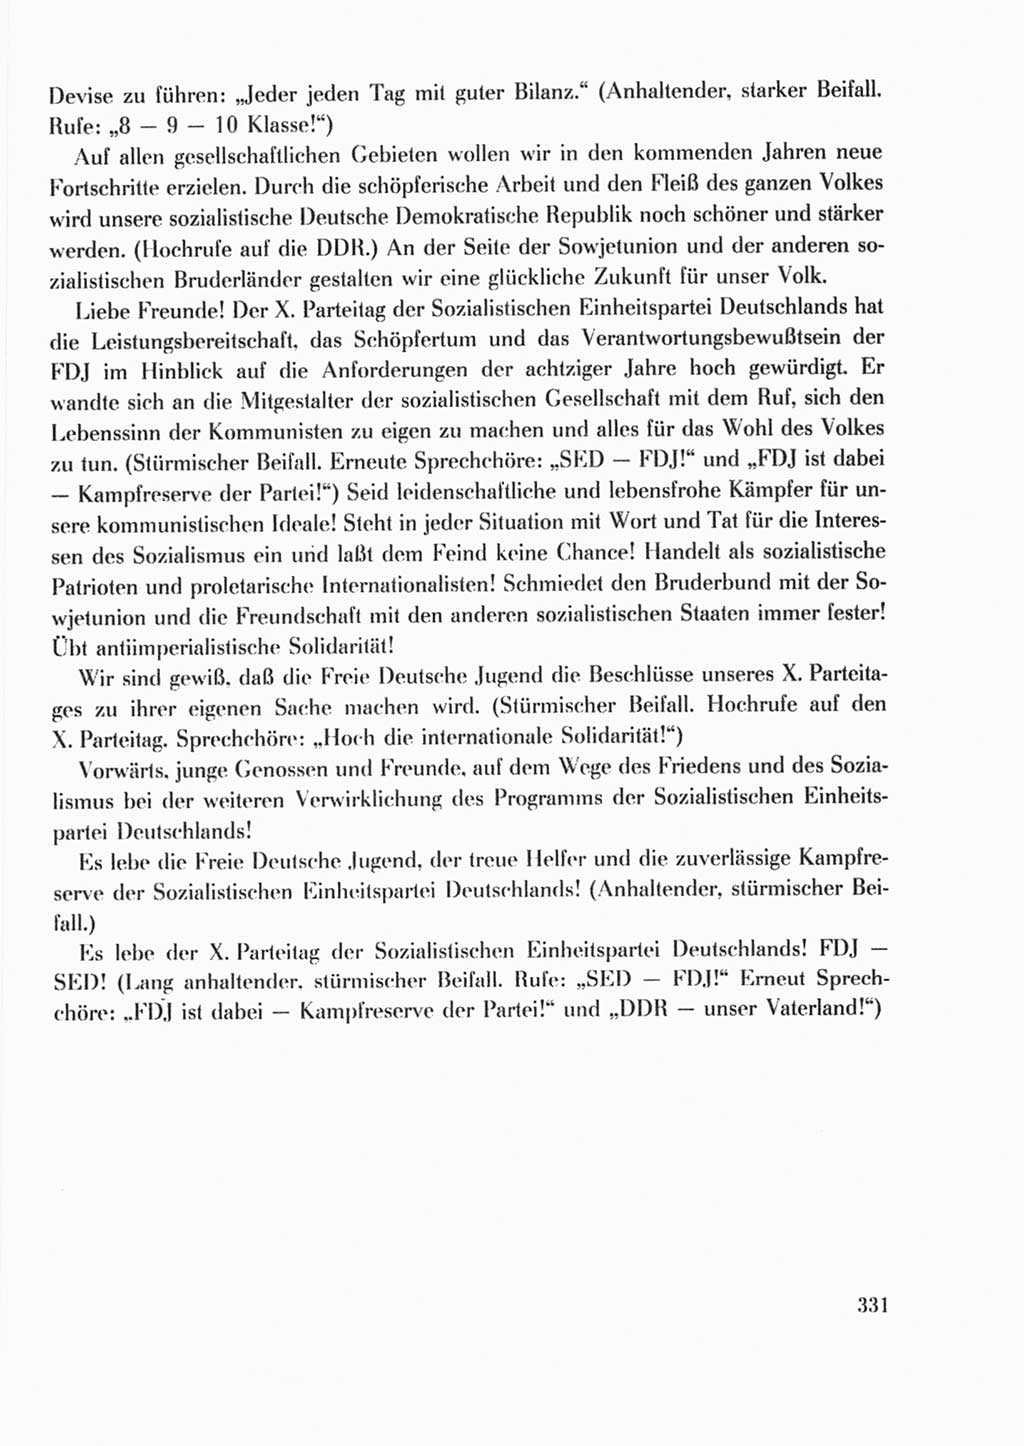 Protokoll der Verhandlungen des Ⅹ. Parteitages der Sozialistischen Einheitspartei Deutschlands (SED) [Deutsche Demokratische Republik (DDR)] 1981, Band 2, Seite 331 (Prot. Verh. Ⅹ. PT SED DDR 1981, Bd. 2, S. 331)